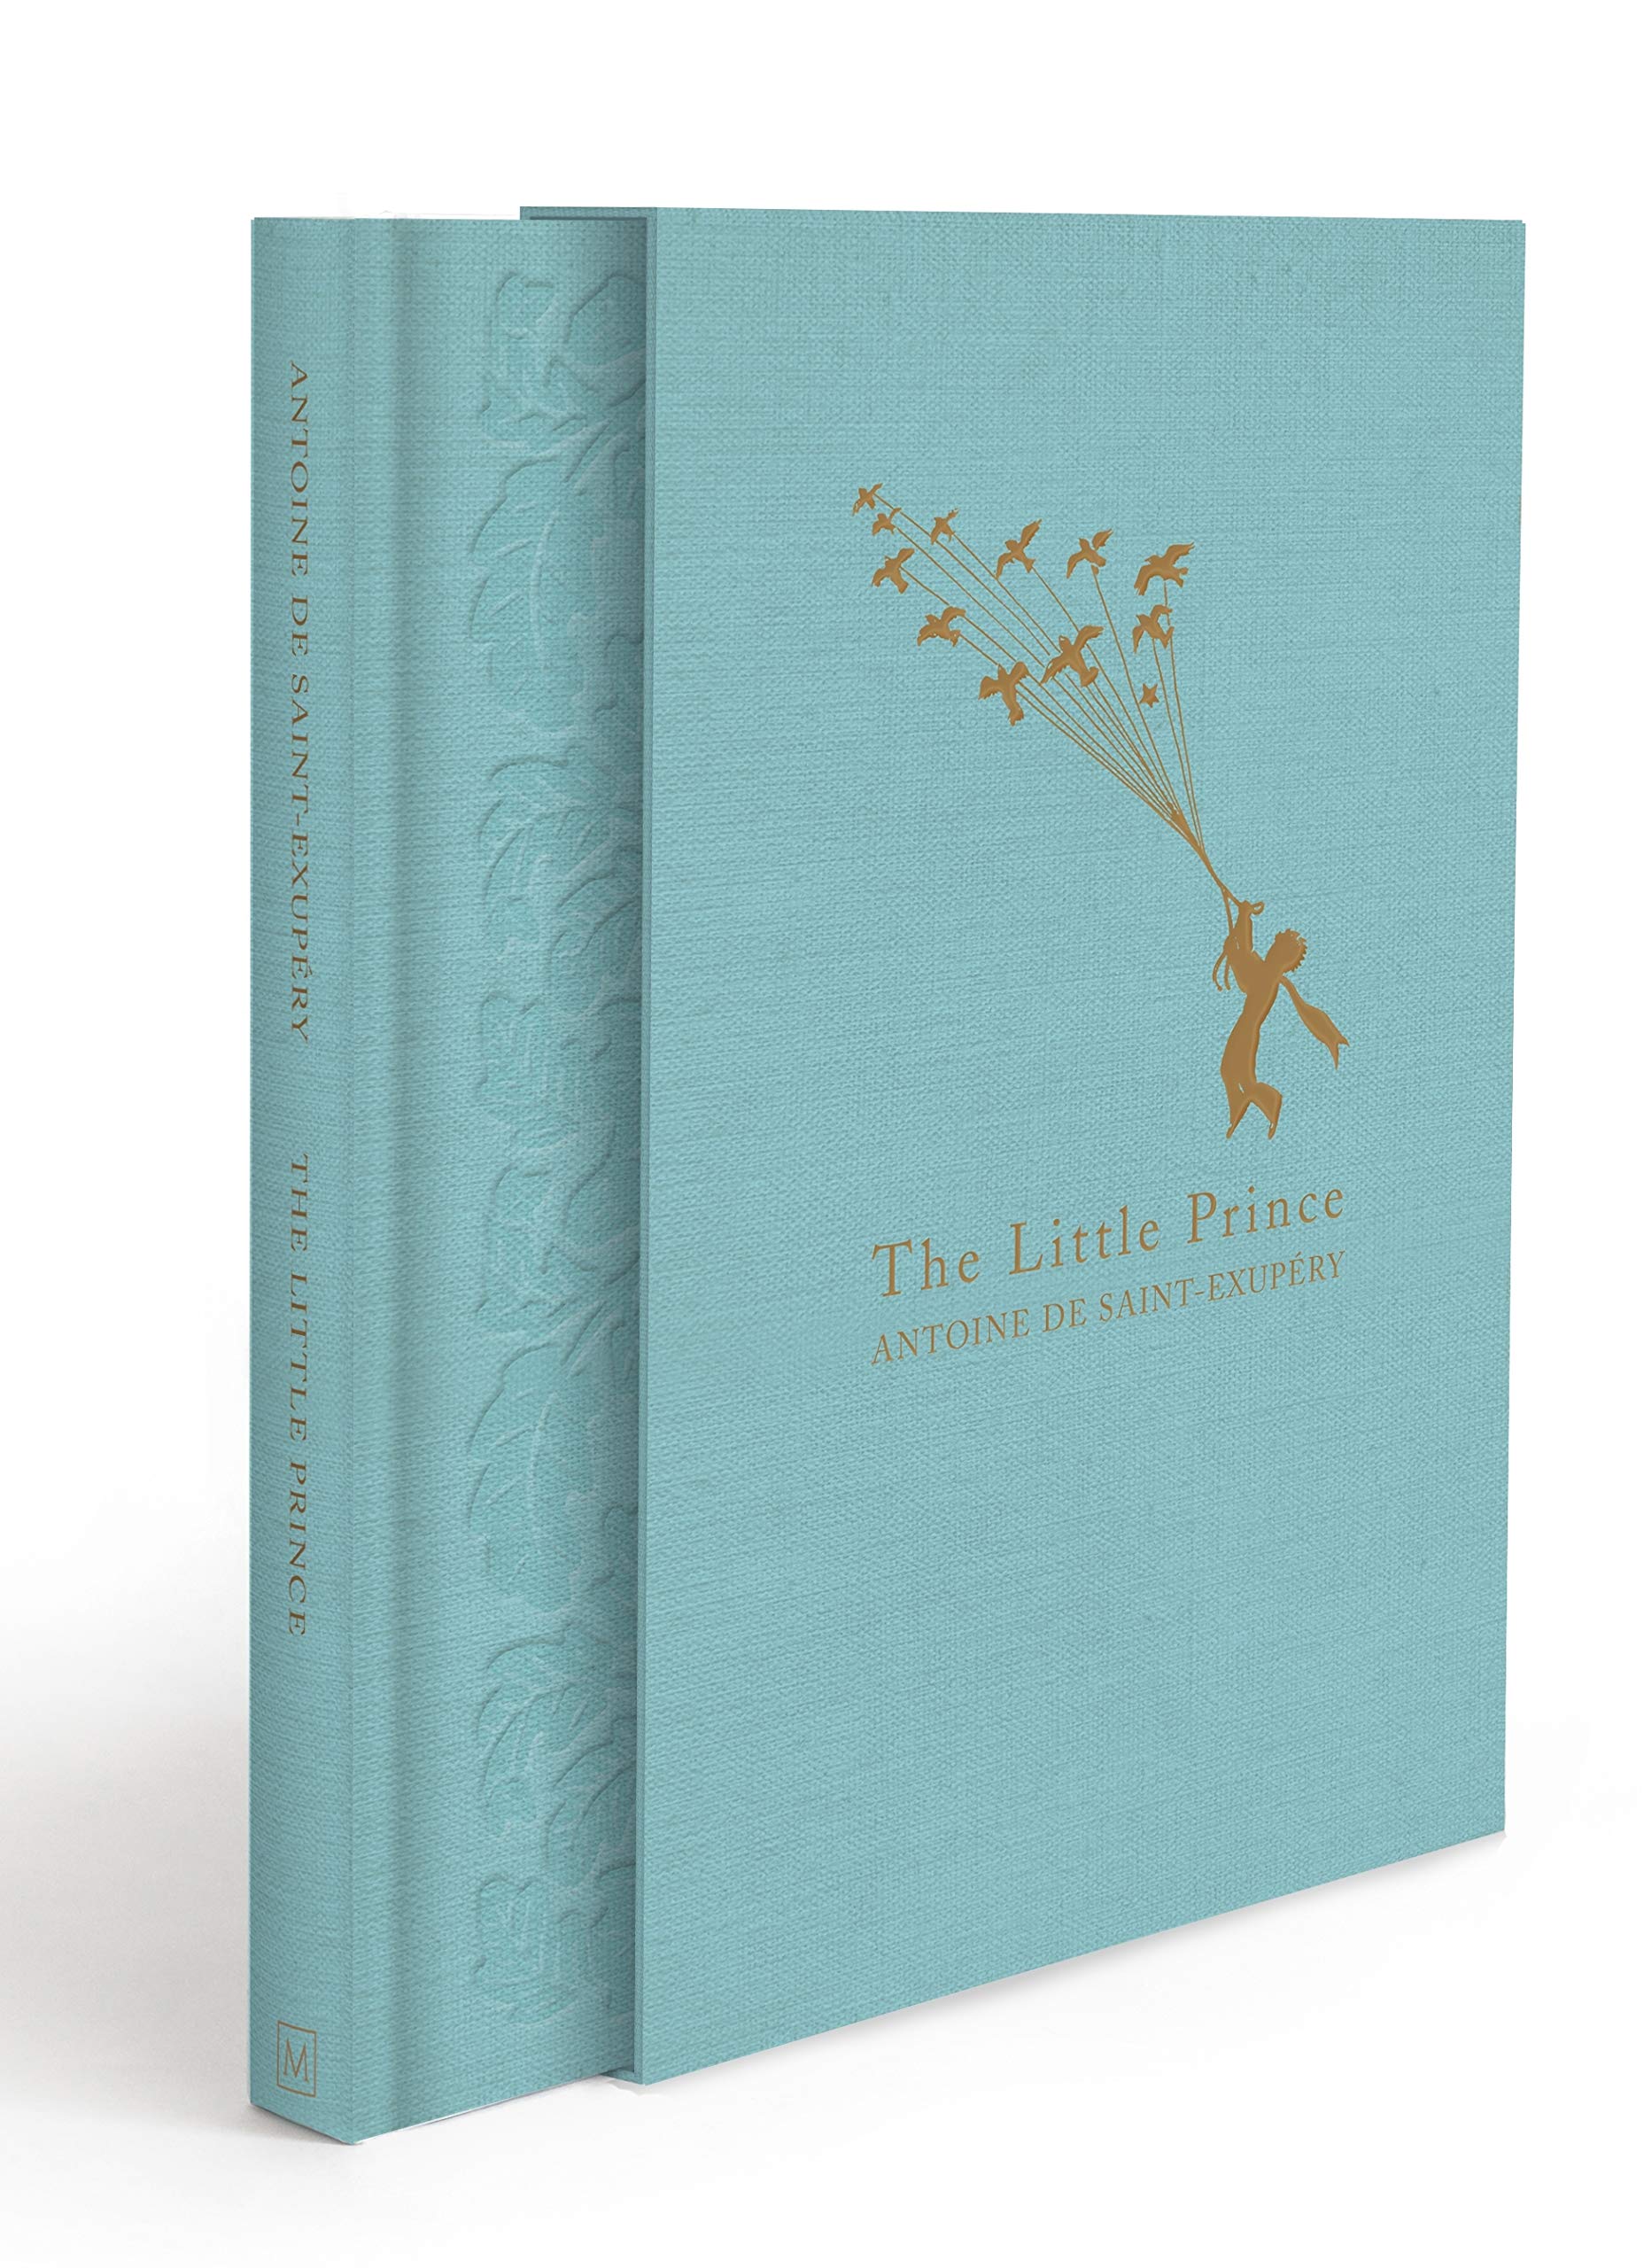 The little prince | Antoine de Saint-Exupery